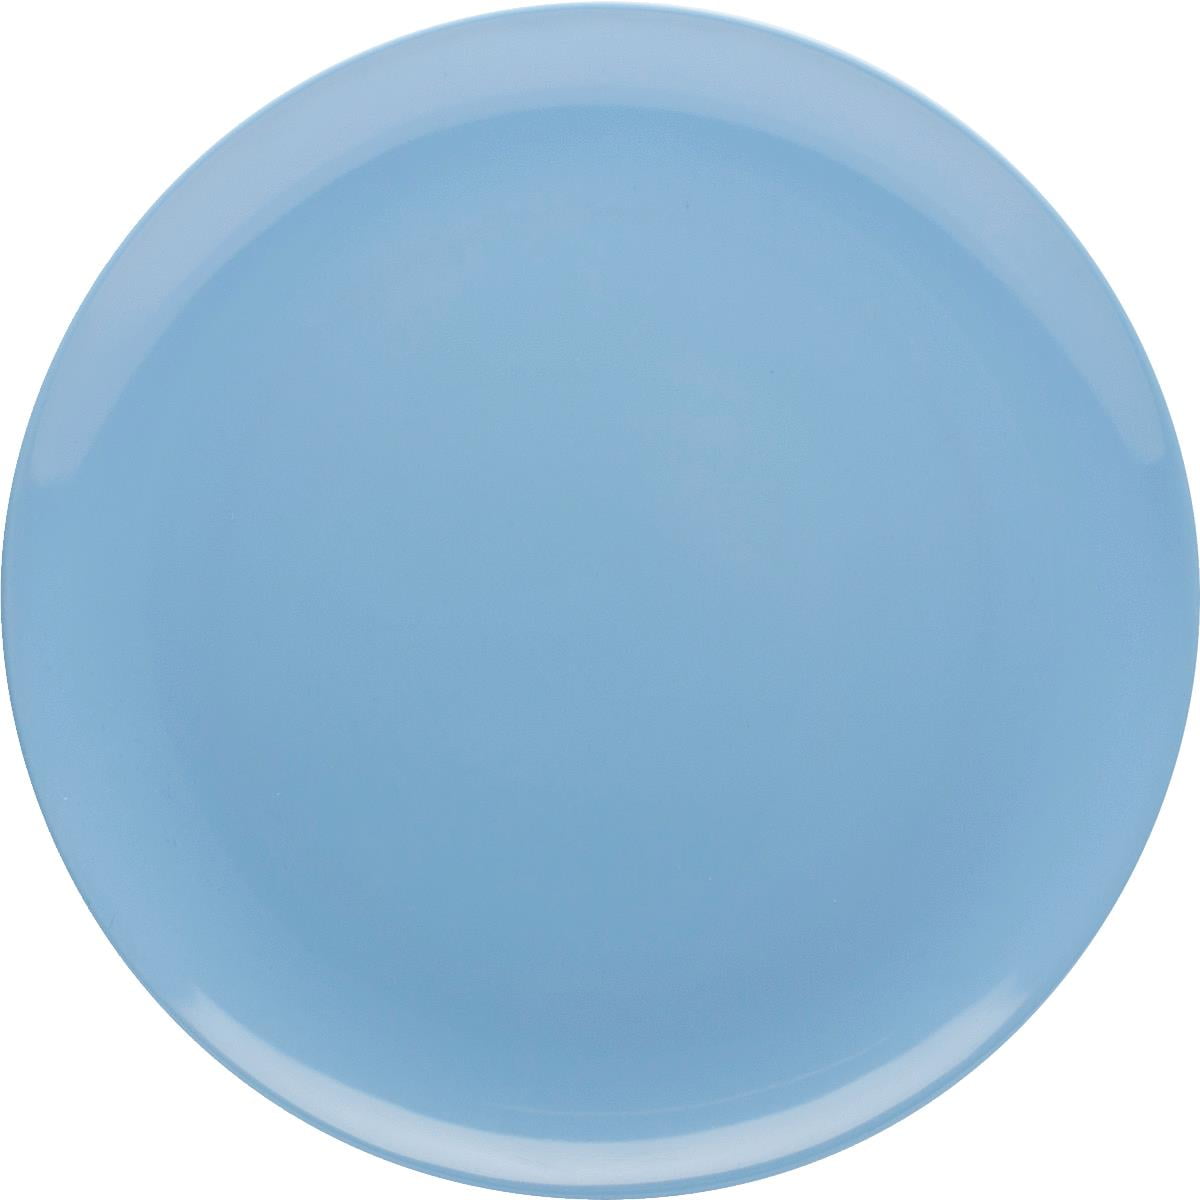 Zak Design Sky Blue 0089-0311 ED 10 In. Dinner Plate, Pack Of 12 ...